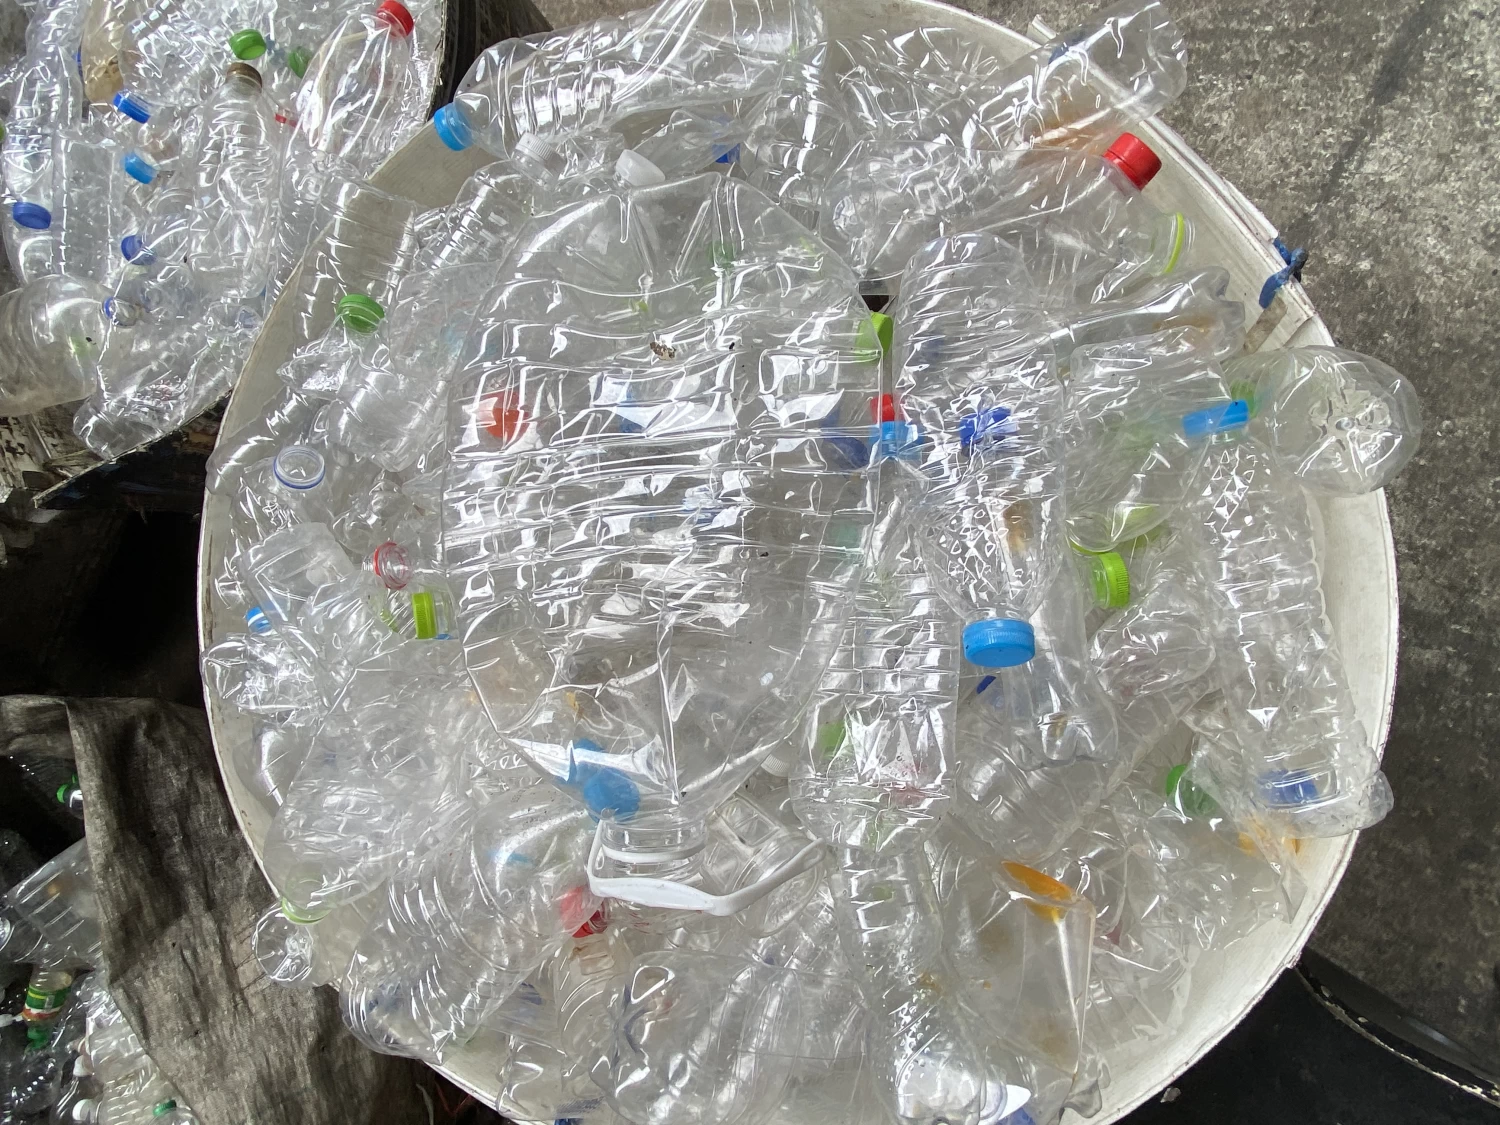 โรงงานรีไซเคิลพลาสติกวงษ์พาณิชย์ร่มเกล้า รับซื้อประมูลพลาสติก ครบวงจร